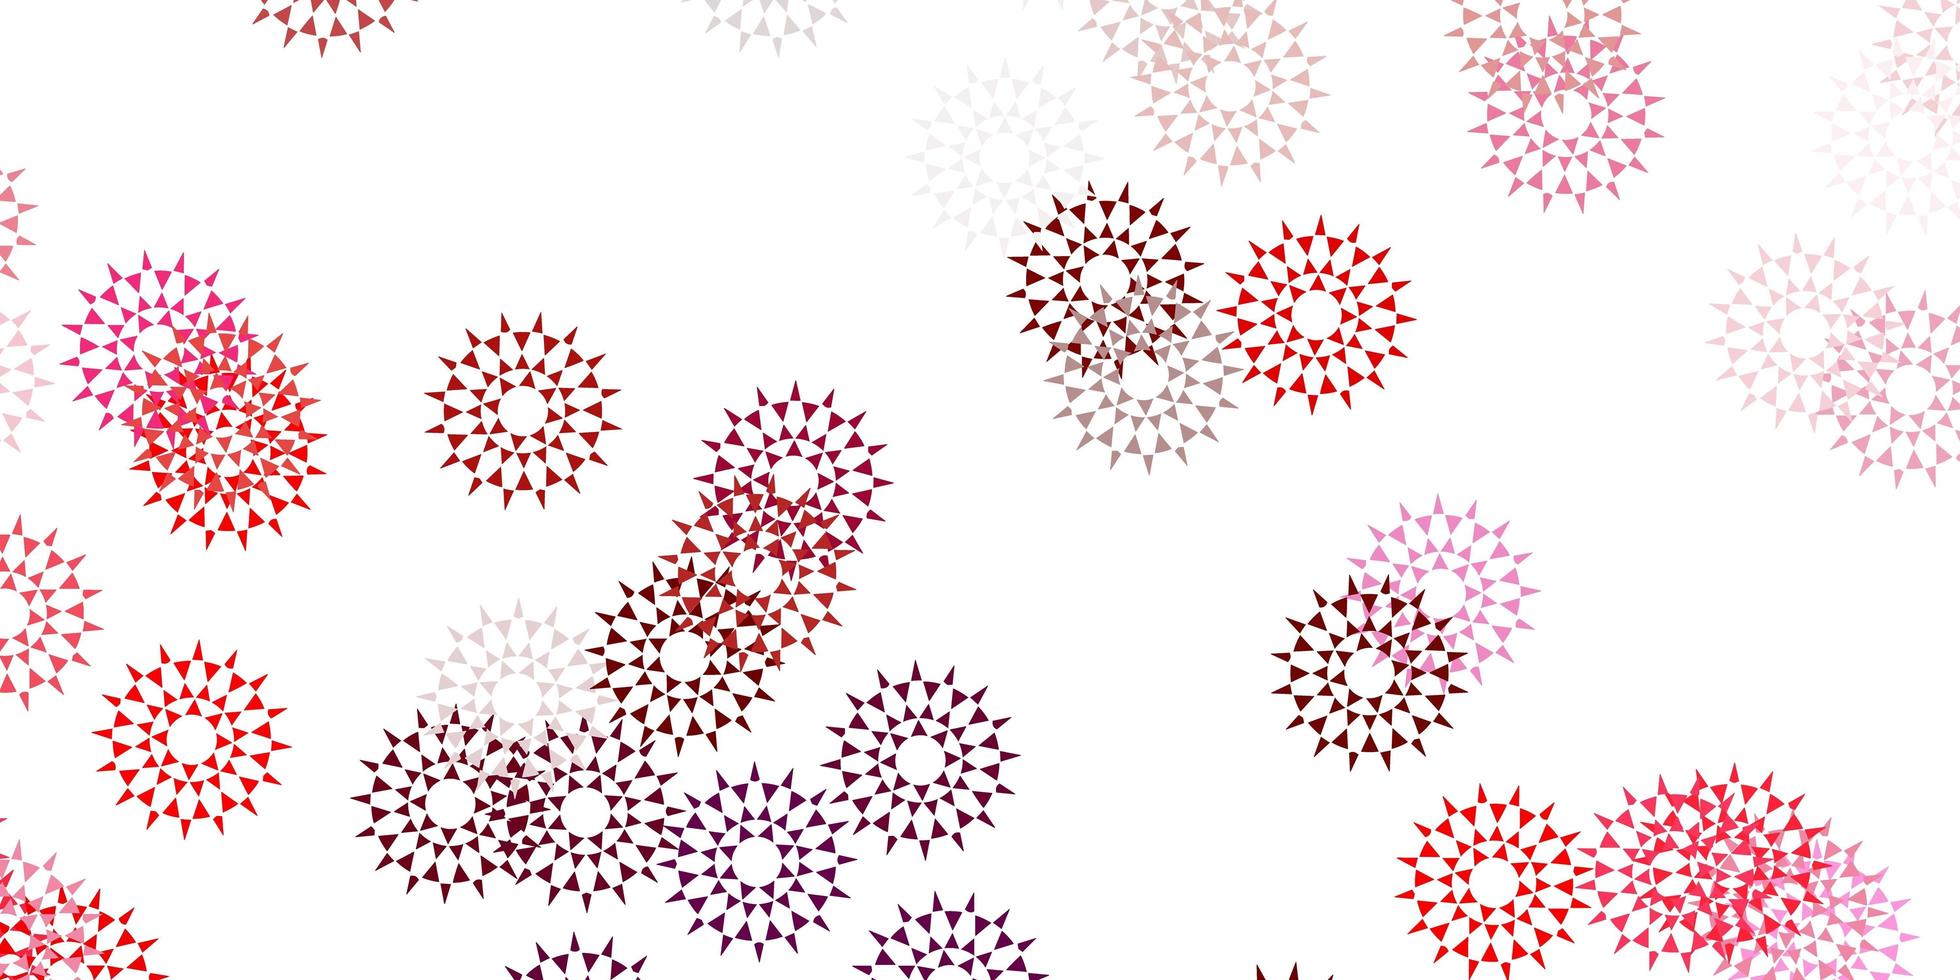 illustrations naturelles de vecteur rose clair, rouge avec des fleurs.